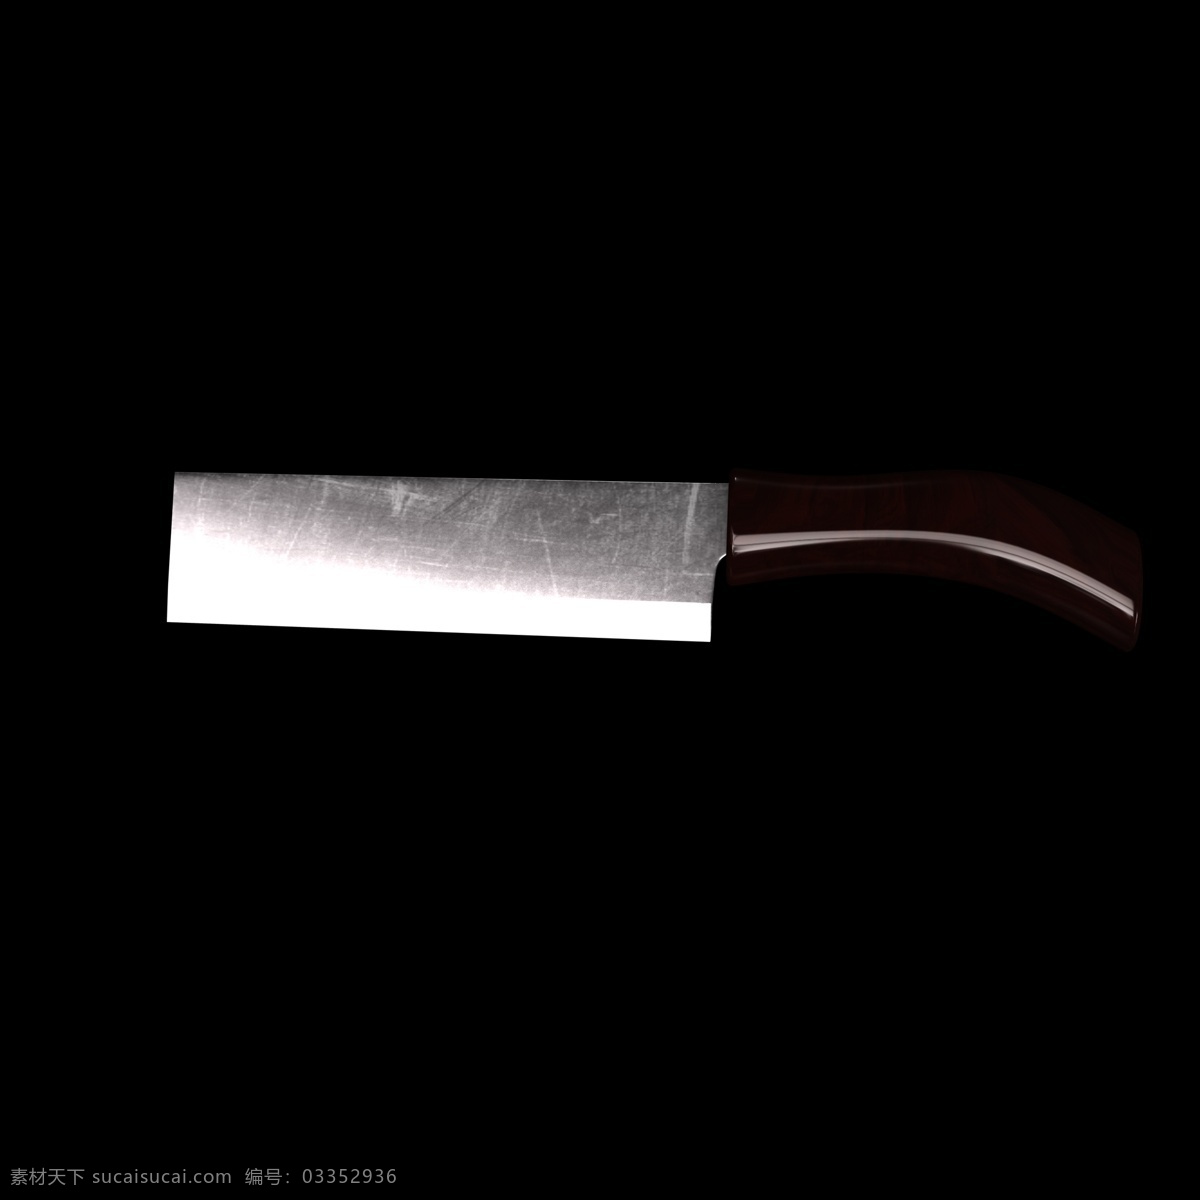 创意 造型 刀具 插图 刀子 c4d 立体 海报 装饰 匕首 凶器 匕首插图 不锈钢小刀